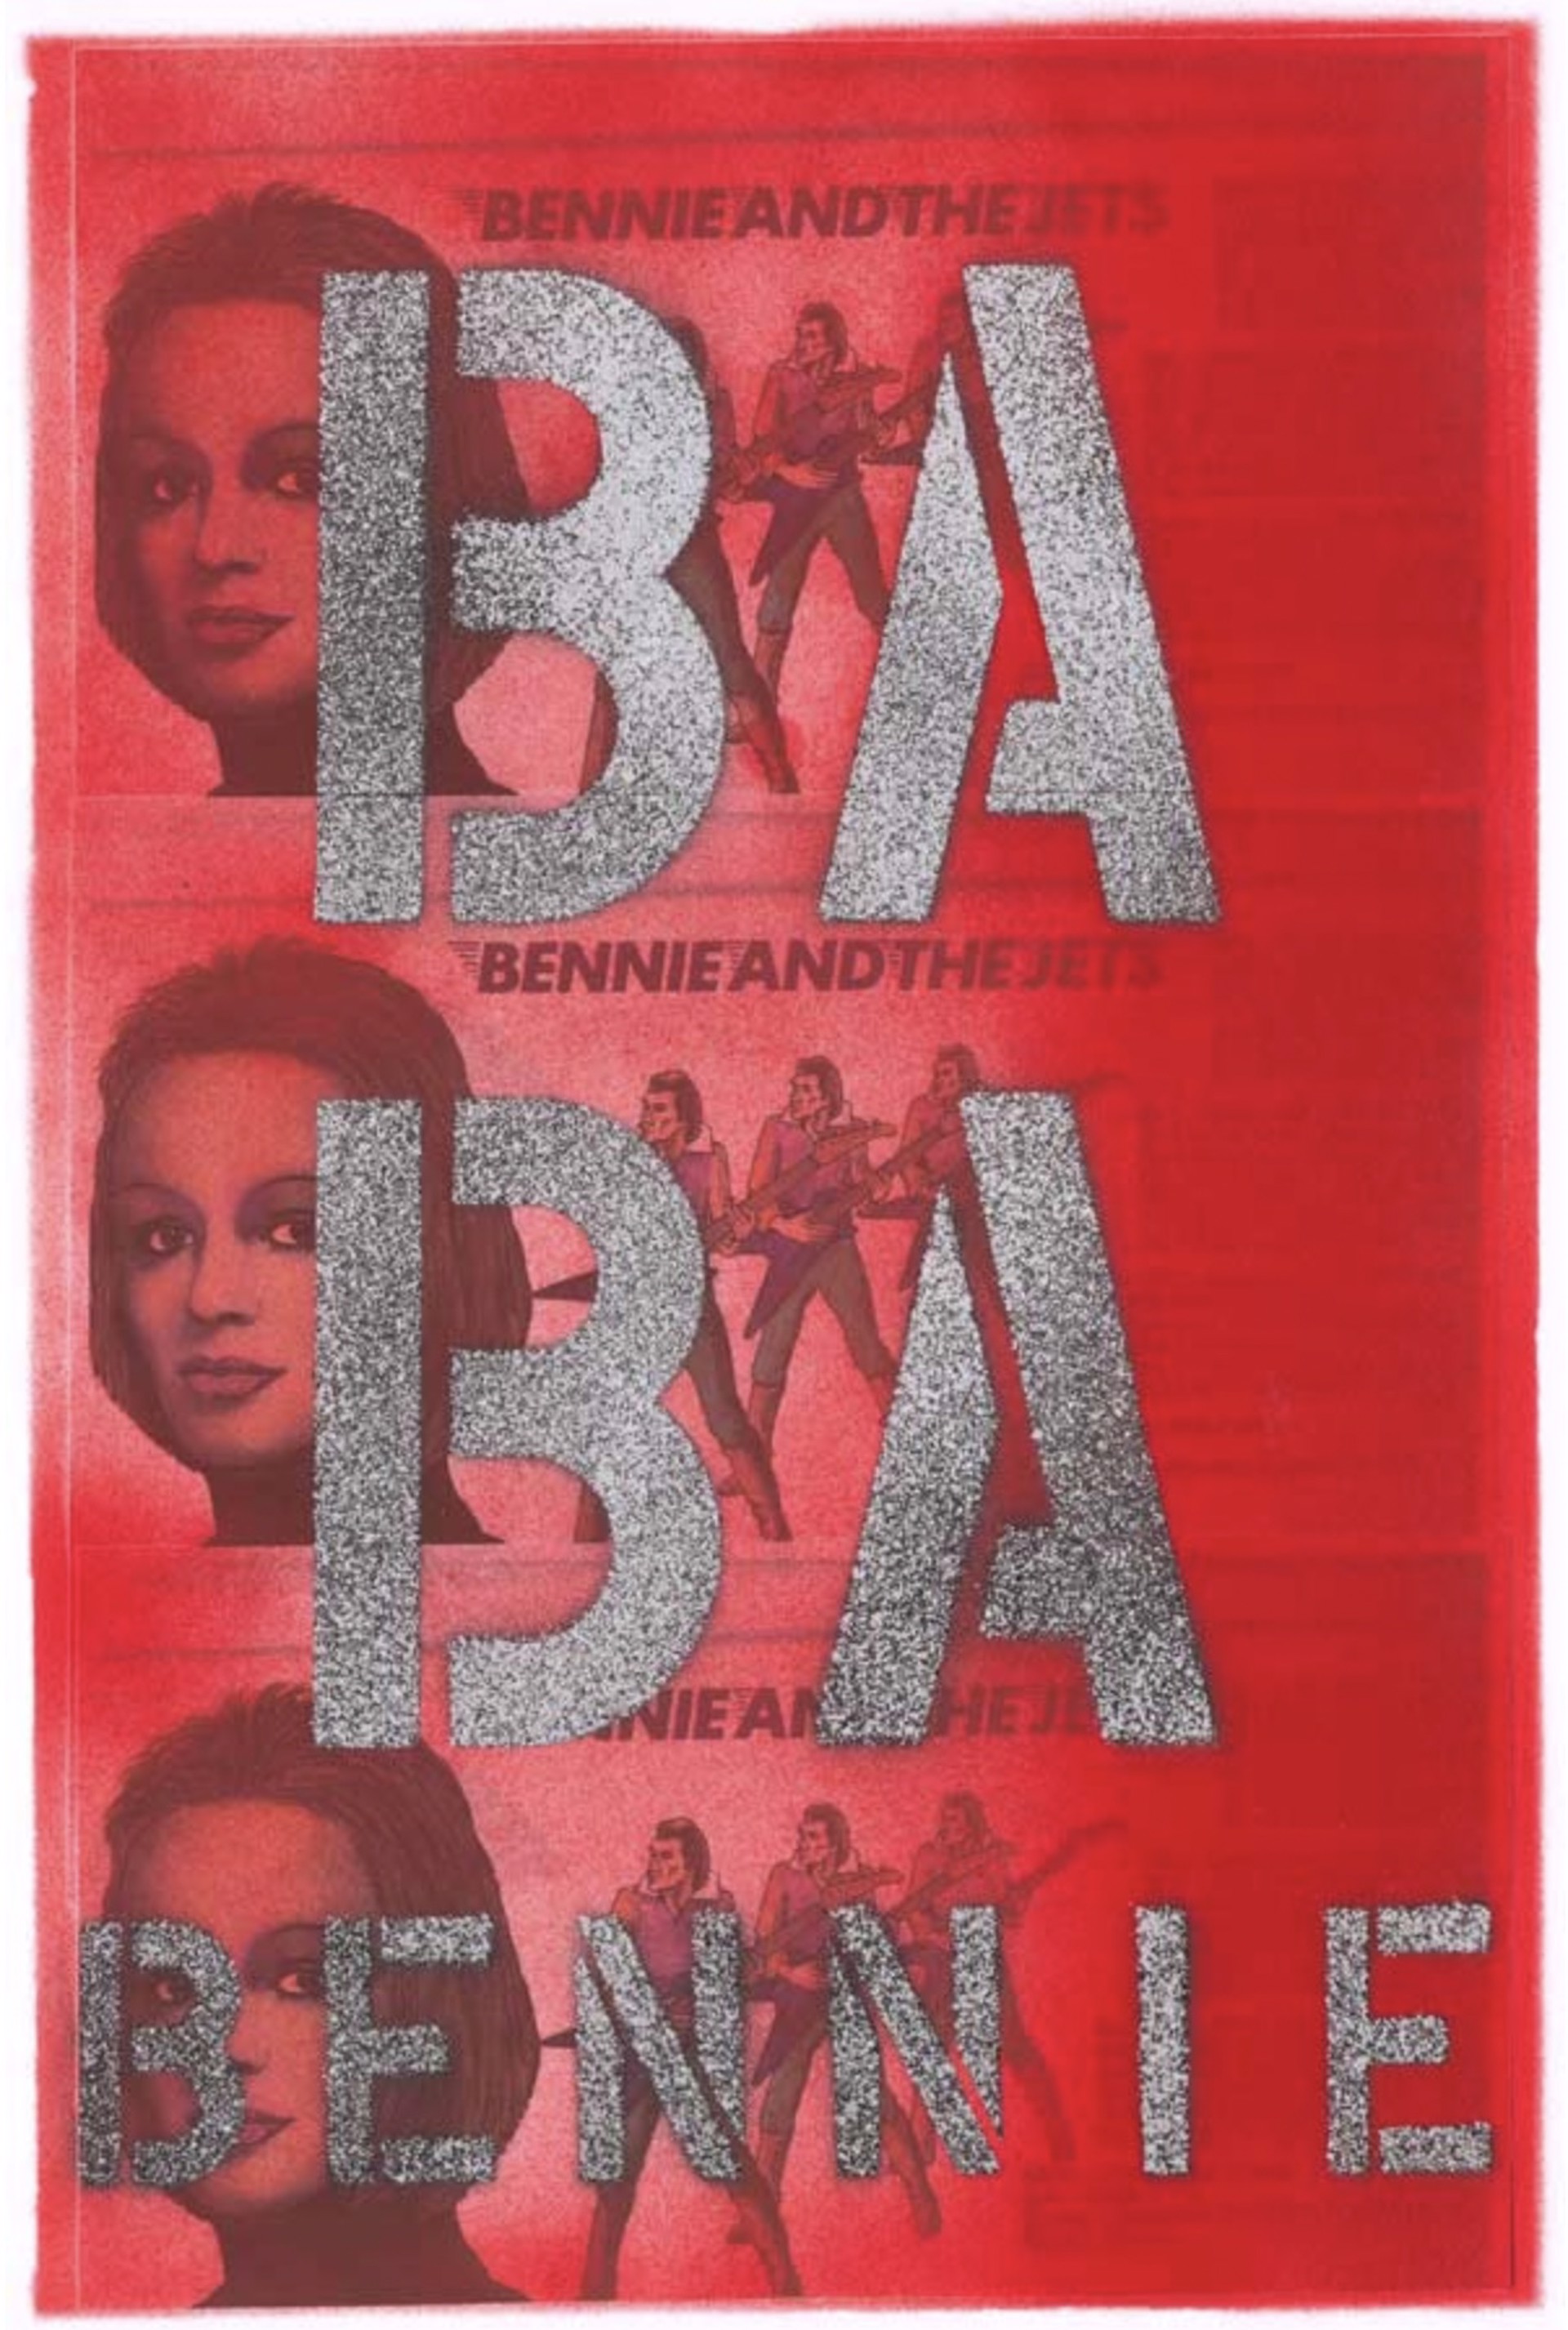 Ba Ba Bennie by Bernie Taupin